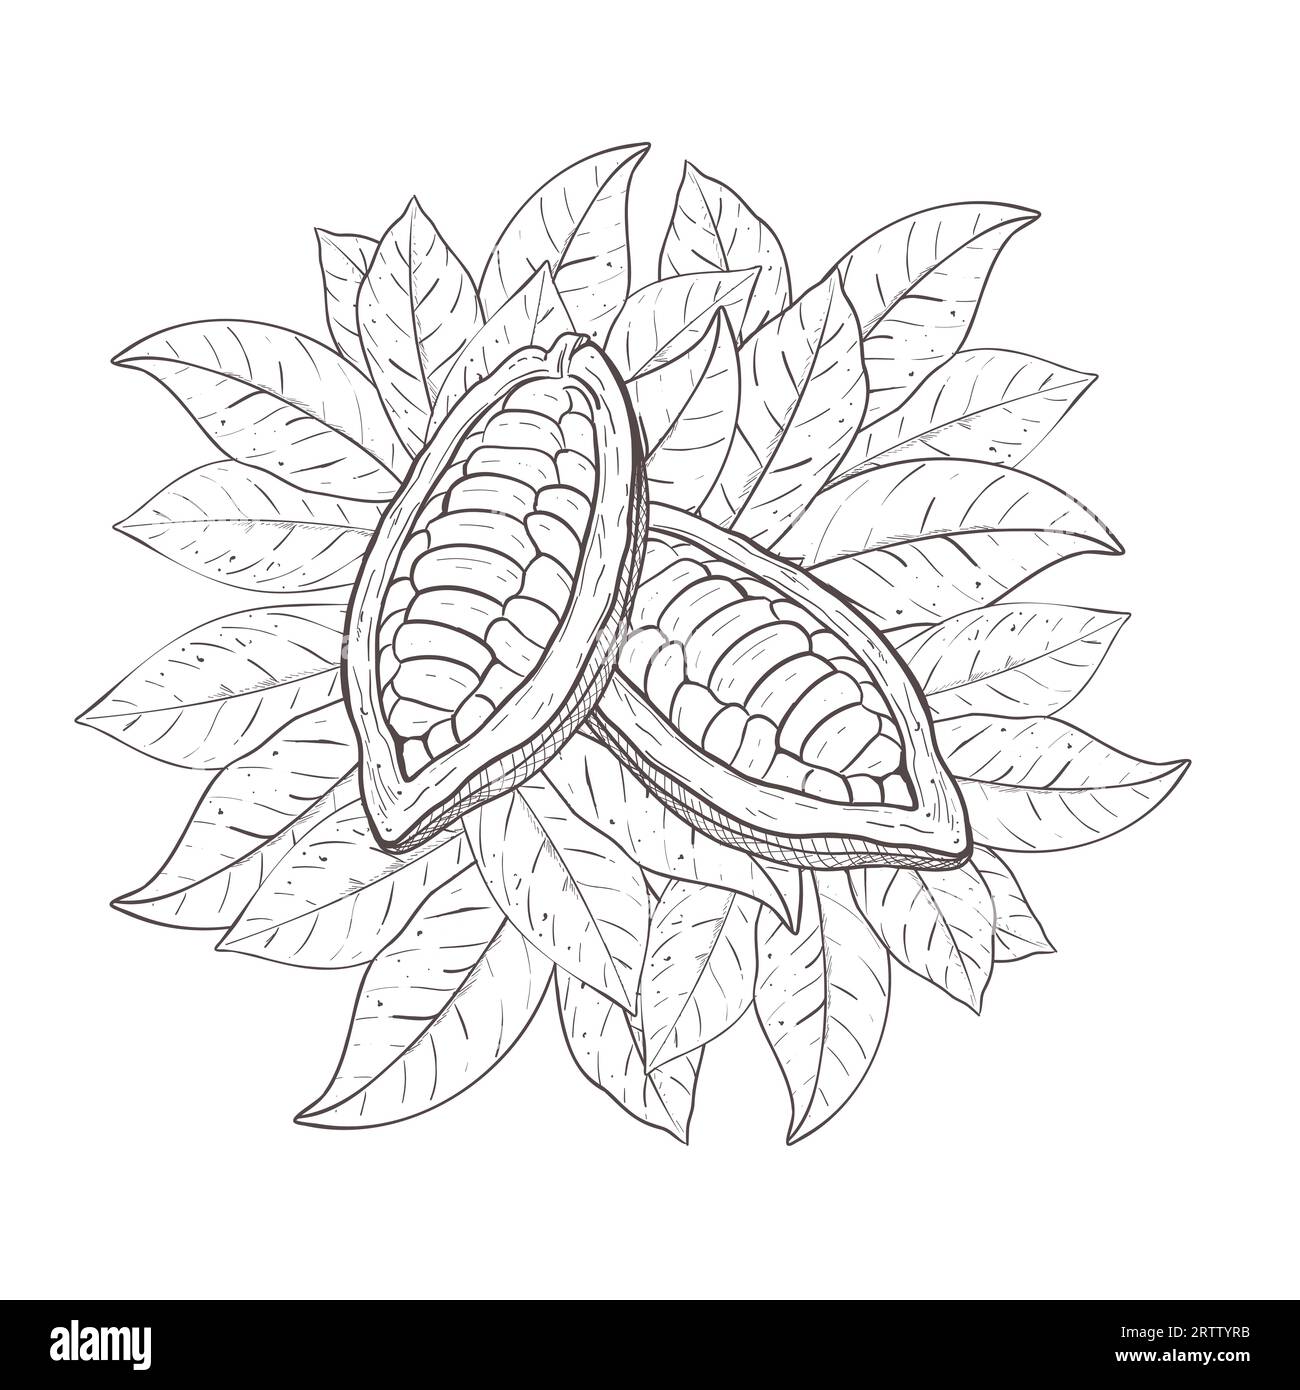 Serie di illustrazioni vettoriali di foglie di cacao, fagioli non sbucciati aperti. Contorno nero della curva della foglia, disegno grafico. Per cartoline, design e composizione Illustrazione Vettoriale